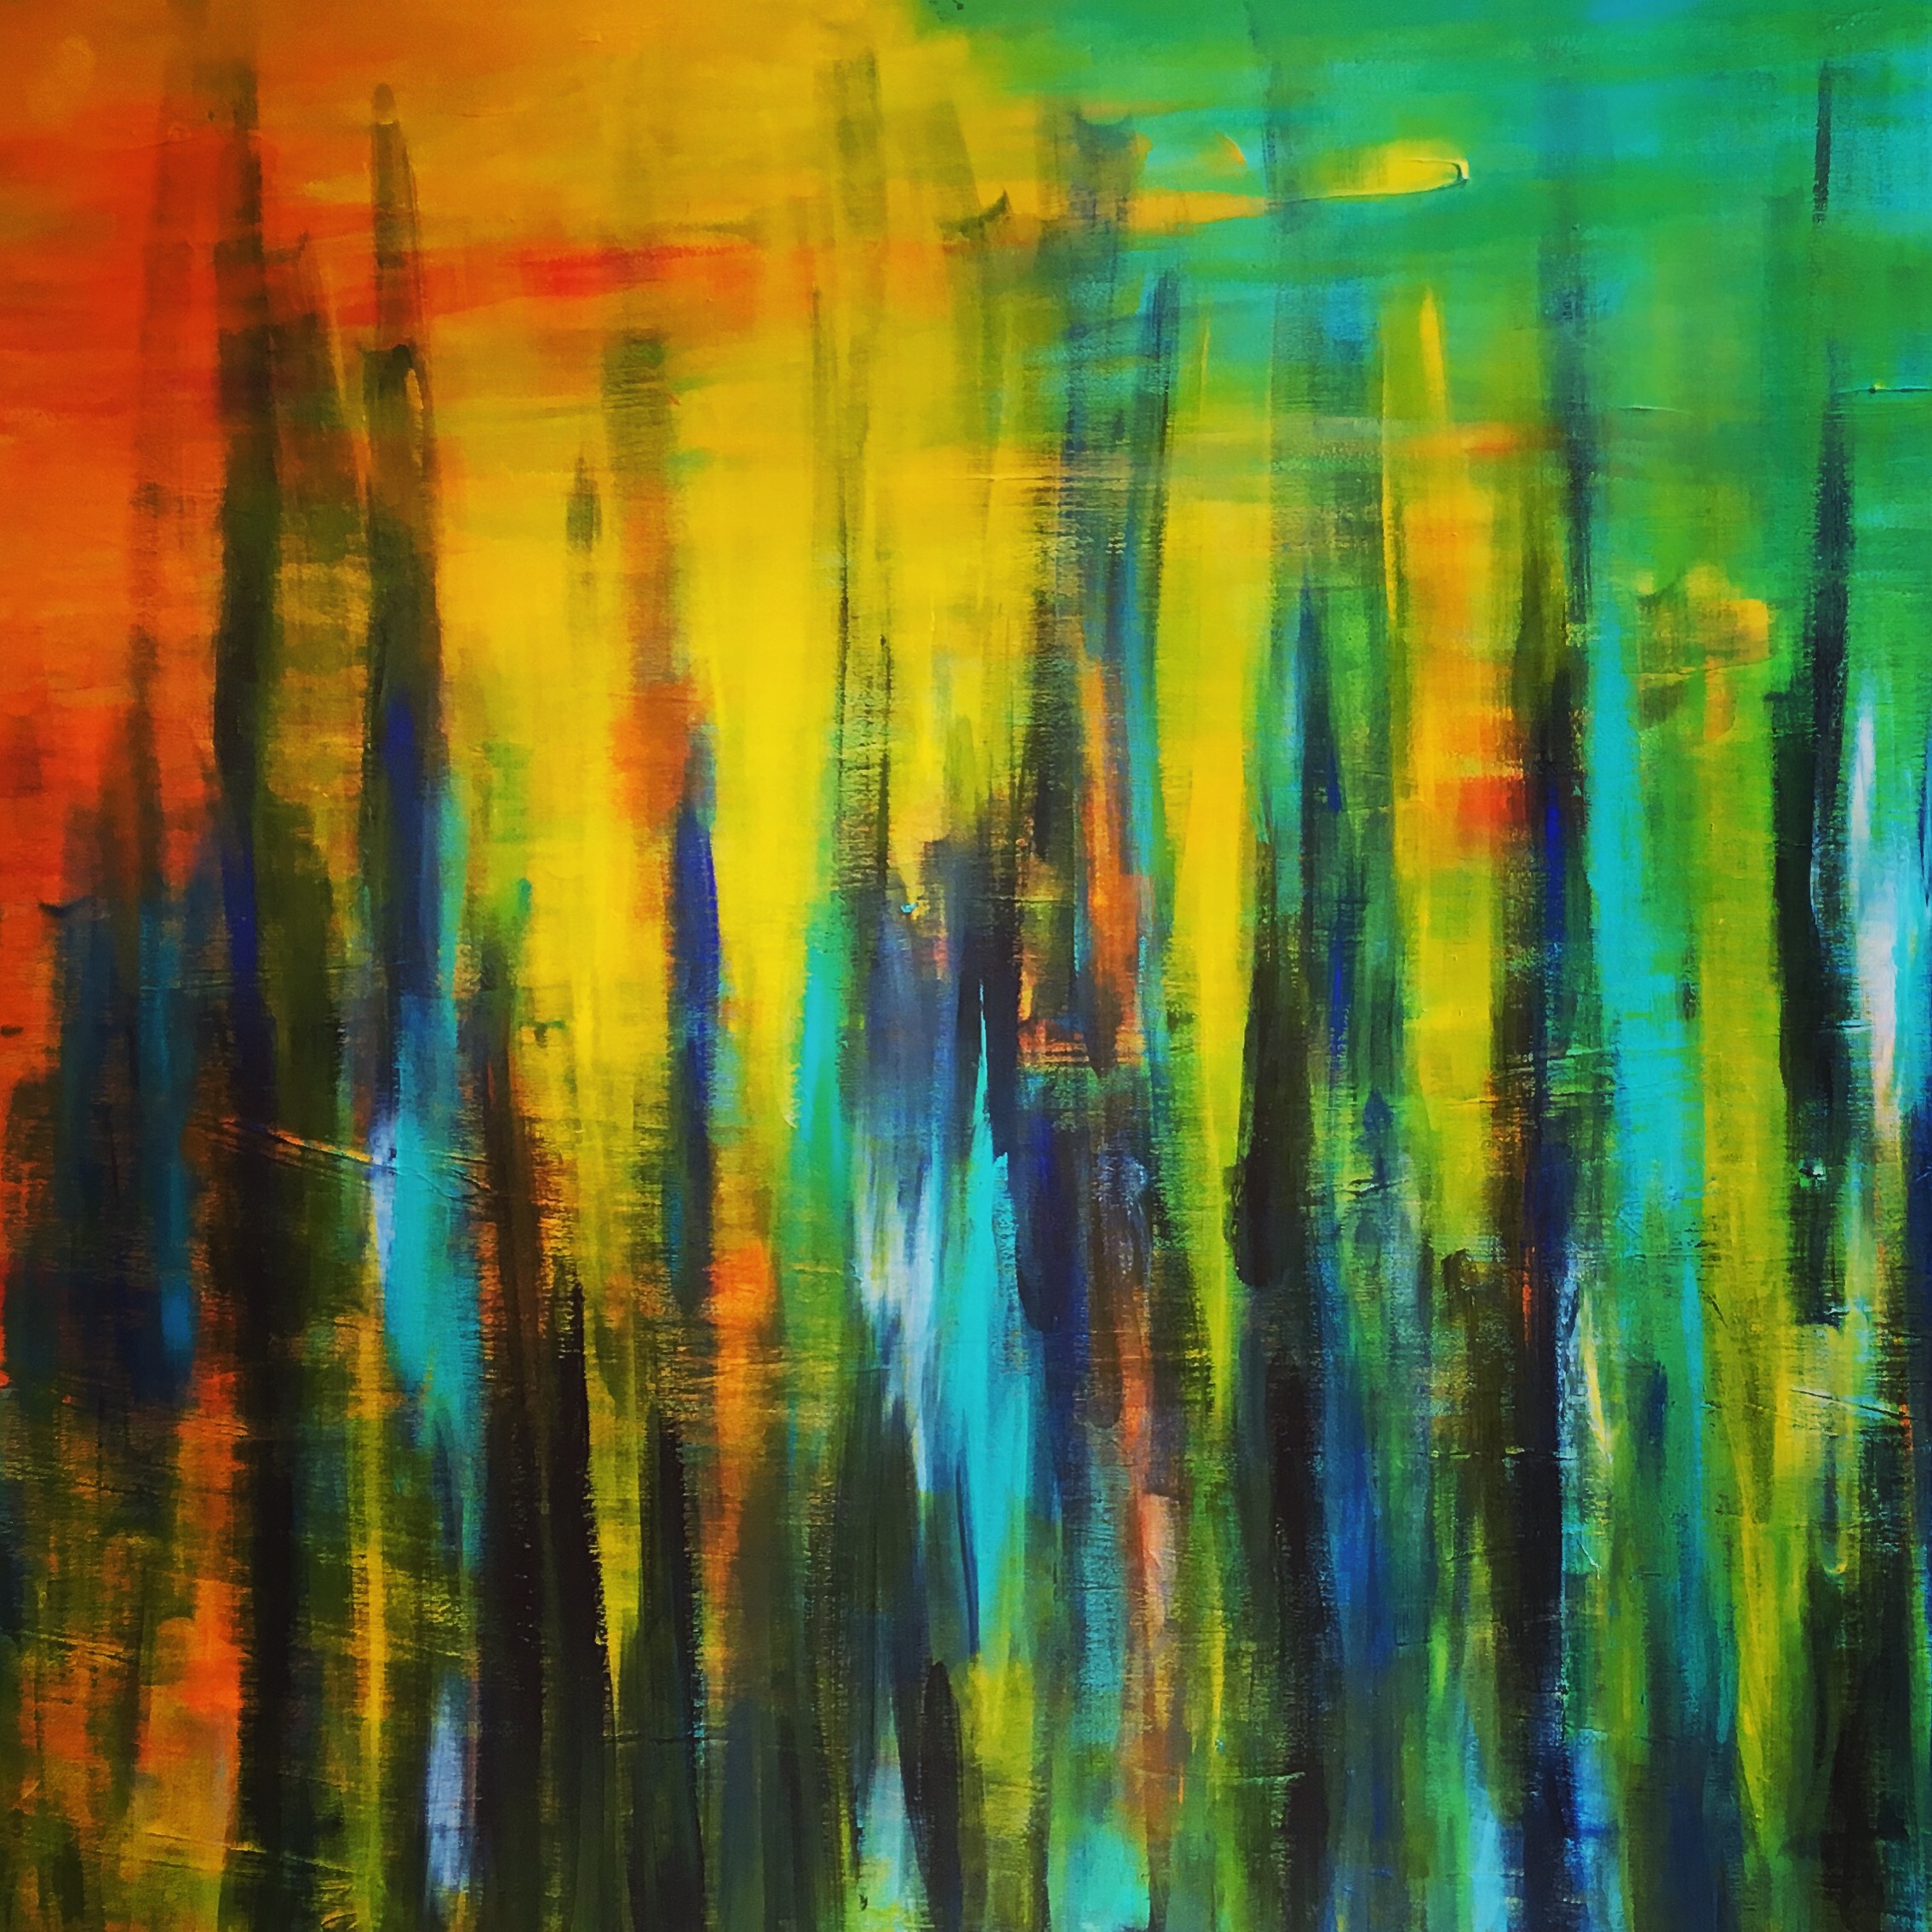 Abstrakt maleri med alle regnbuens farver og hvor de lange penselstrøg skabre liv.